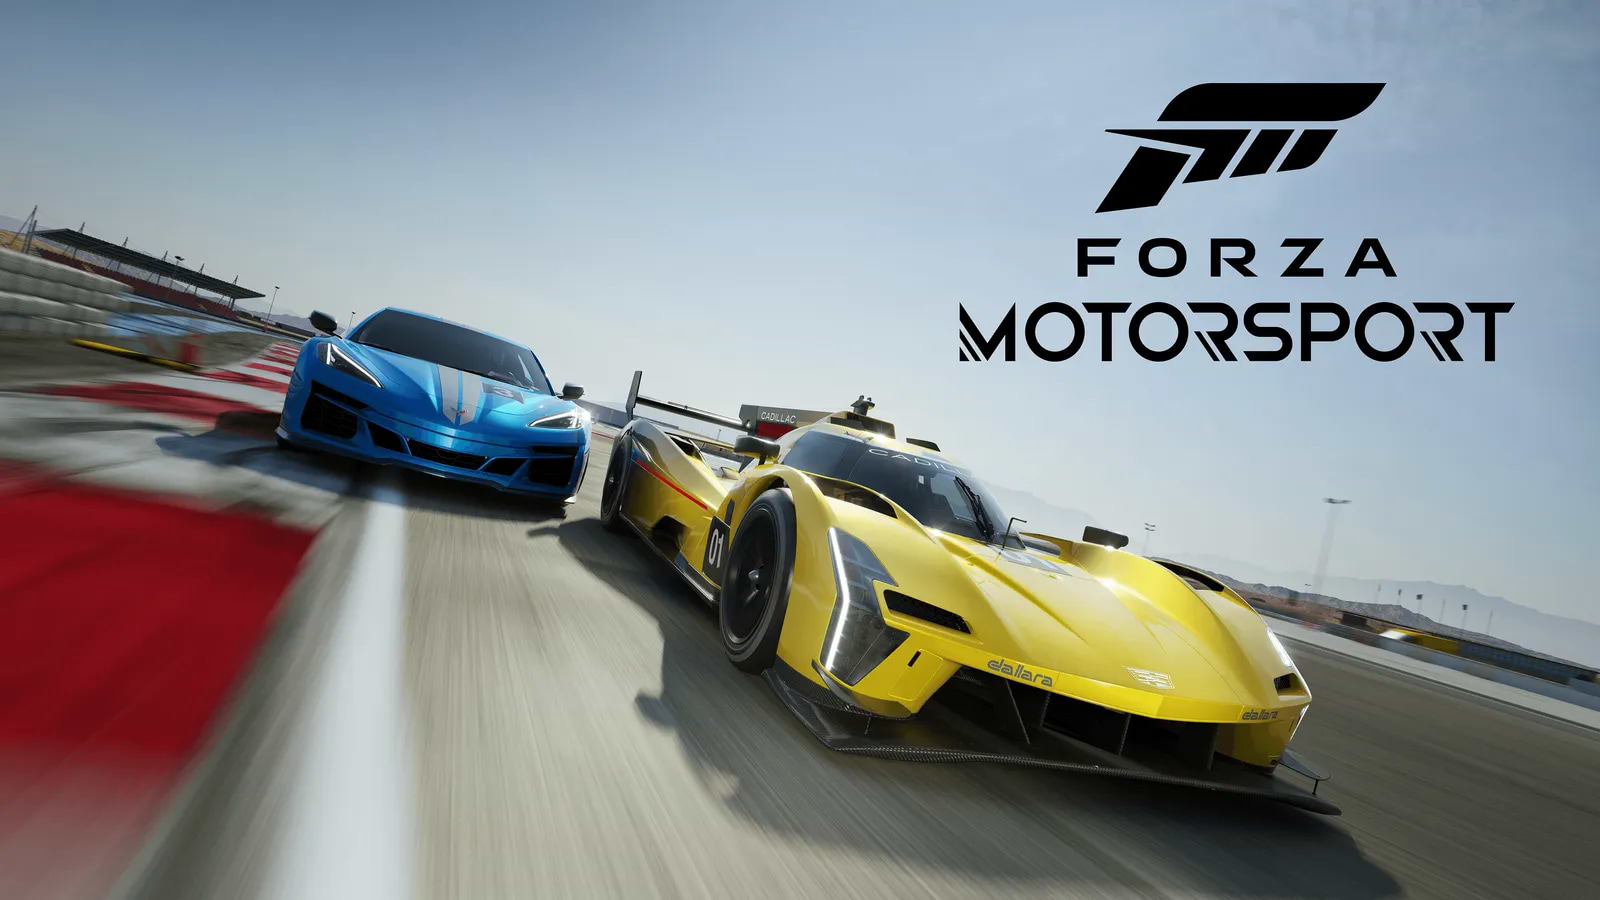 באנדל קונסולה Microsoft Xbox Series X 1TB כולל משחק Forza Motorsport - צבע שחור שנתיים אחריות ע"י היבואן הרשמי